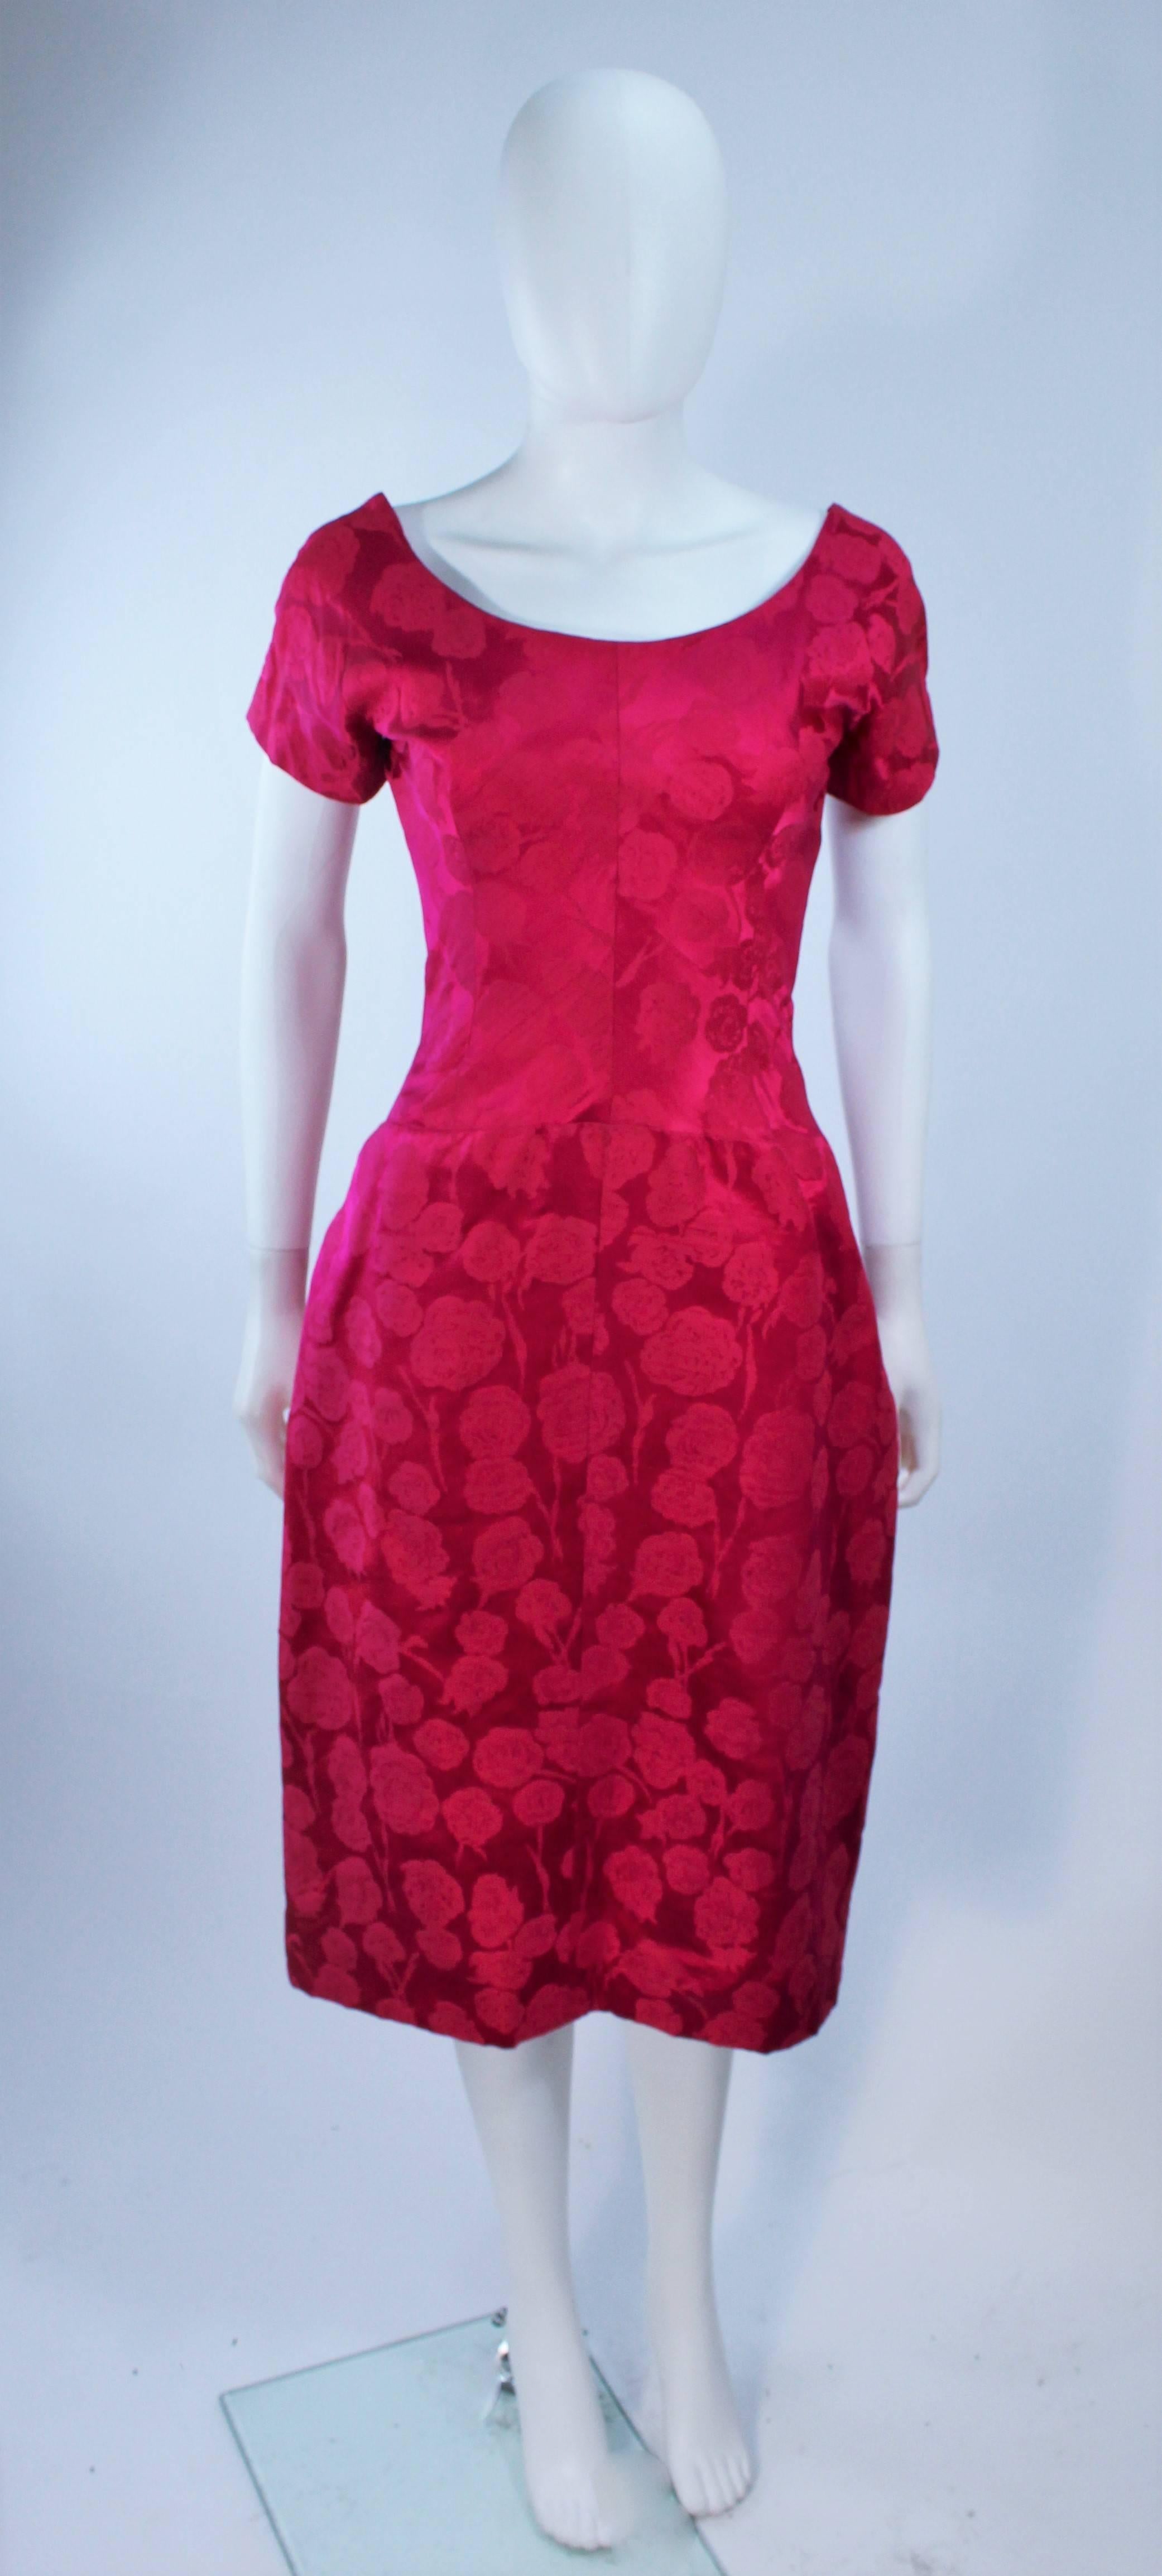 Cette robe de cocktail ou de jour RARE attribuée par Schiaparelli est composée d'un damas de soie rose, avec un imprimé floral. 

L'étiquette manque sur cette robe et a apparemment été perdue lors du nettoyage à sec.

La robe n'a PAS de fermeture